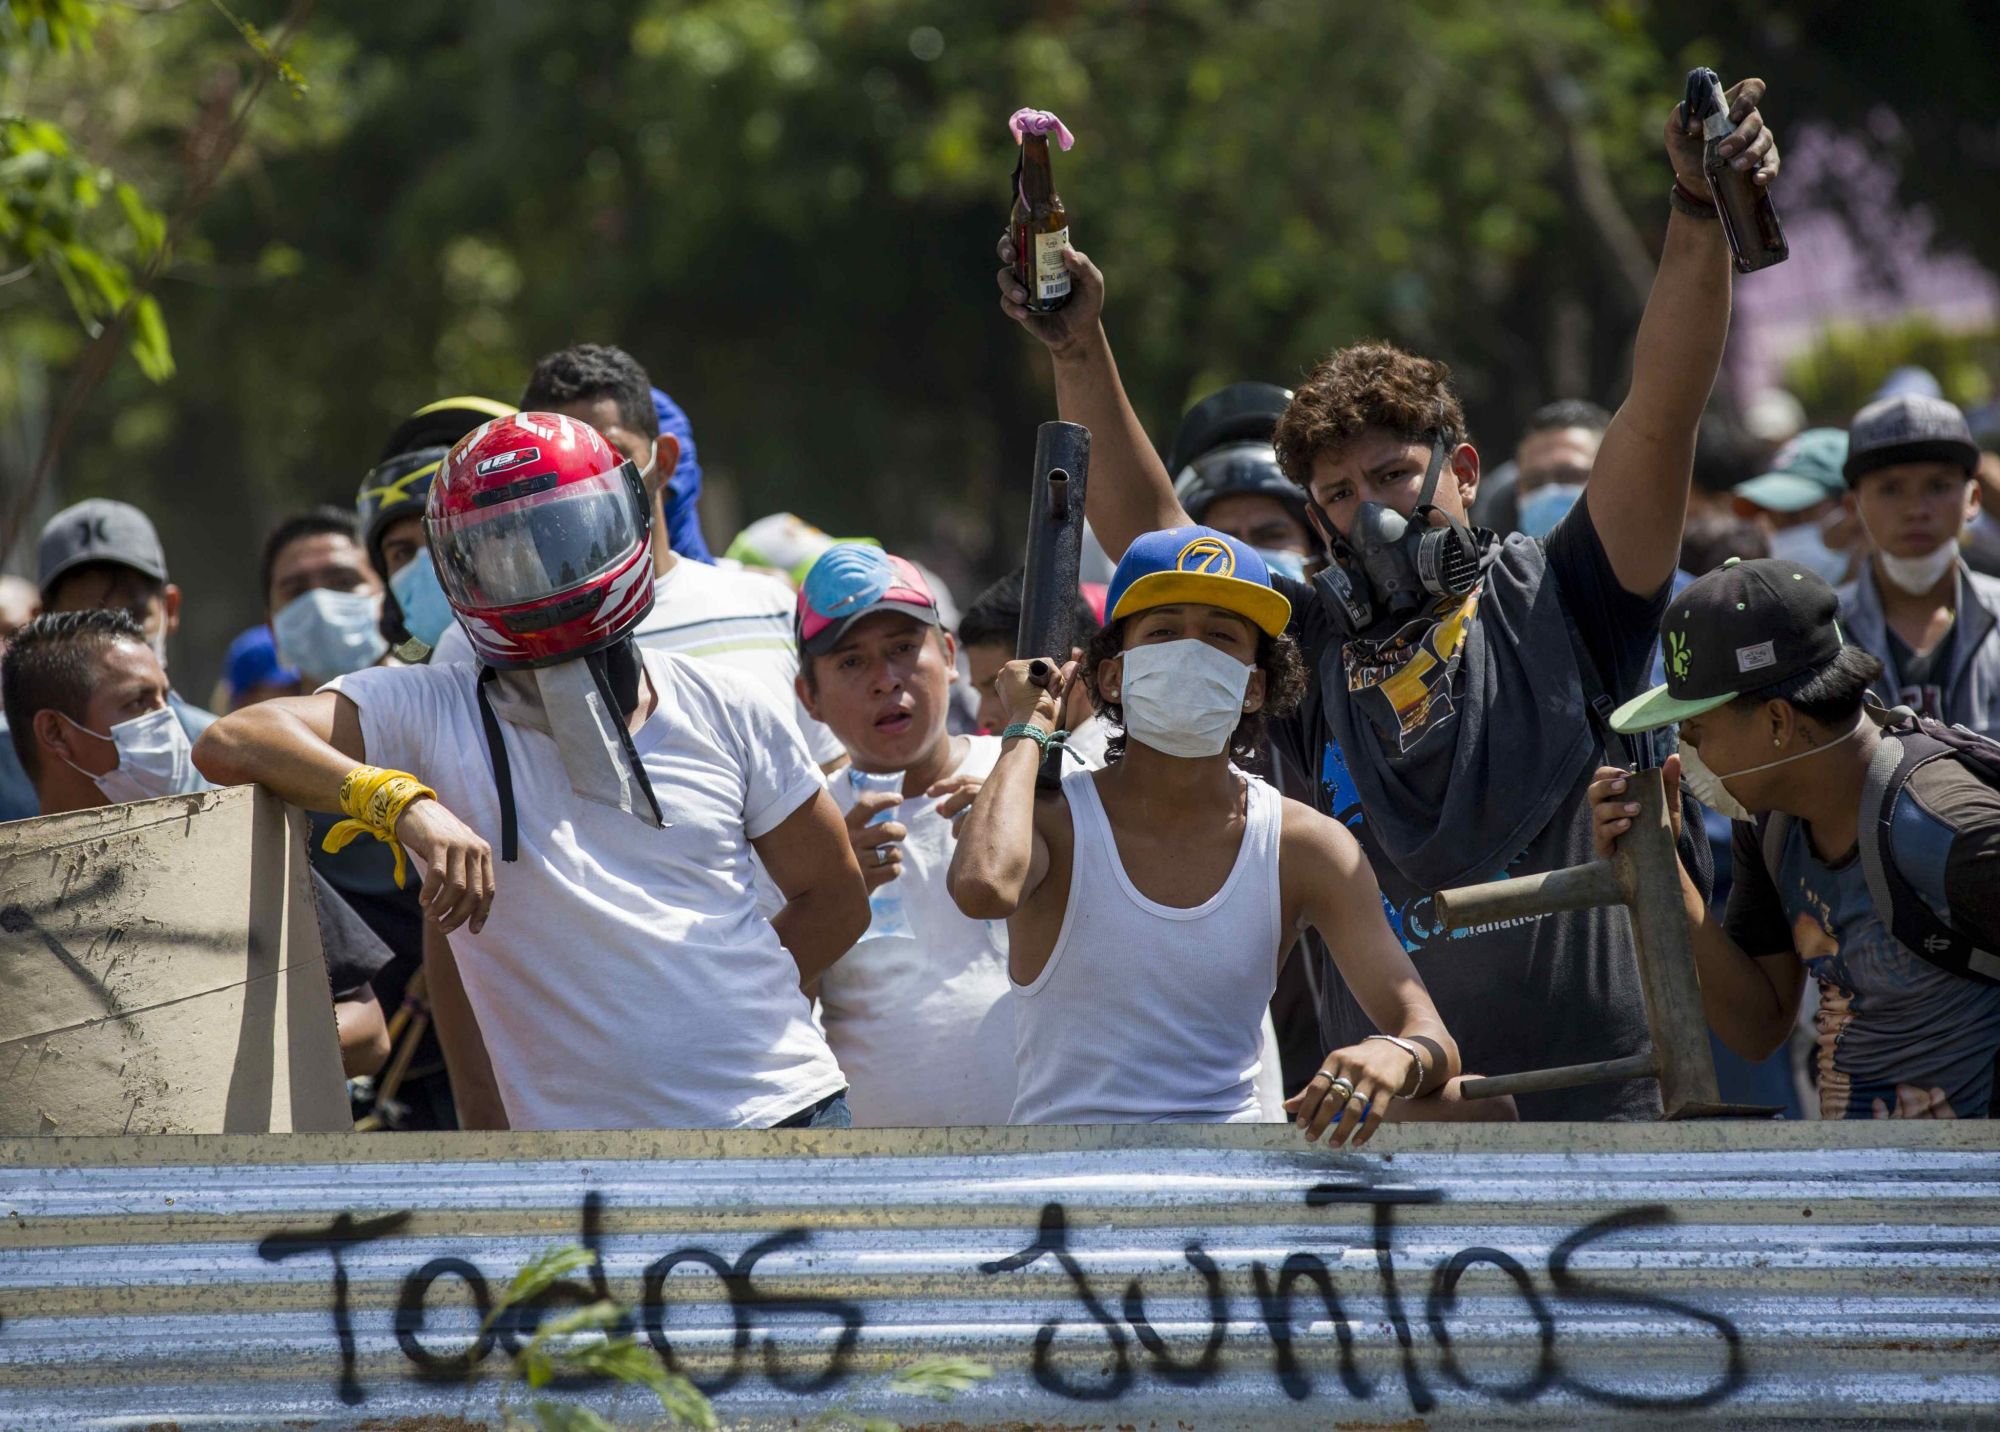 Tüntetők a demonstrációk negyedik napján Managuában, Nicaraguában 2018. április 21-én.  Felirat: "Todos juntos", azaz "Mindeki együtt".   EPA/JORGE TORRES